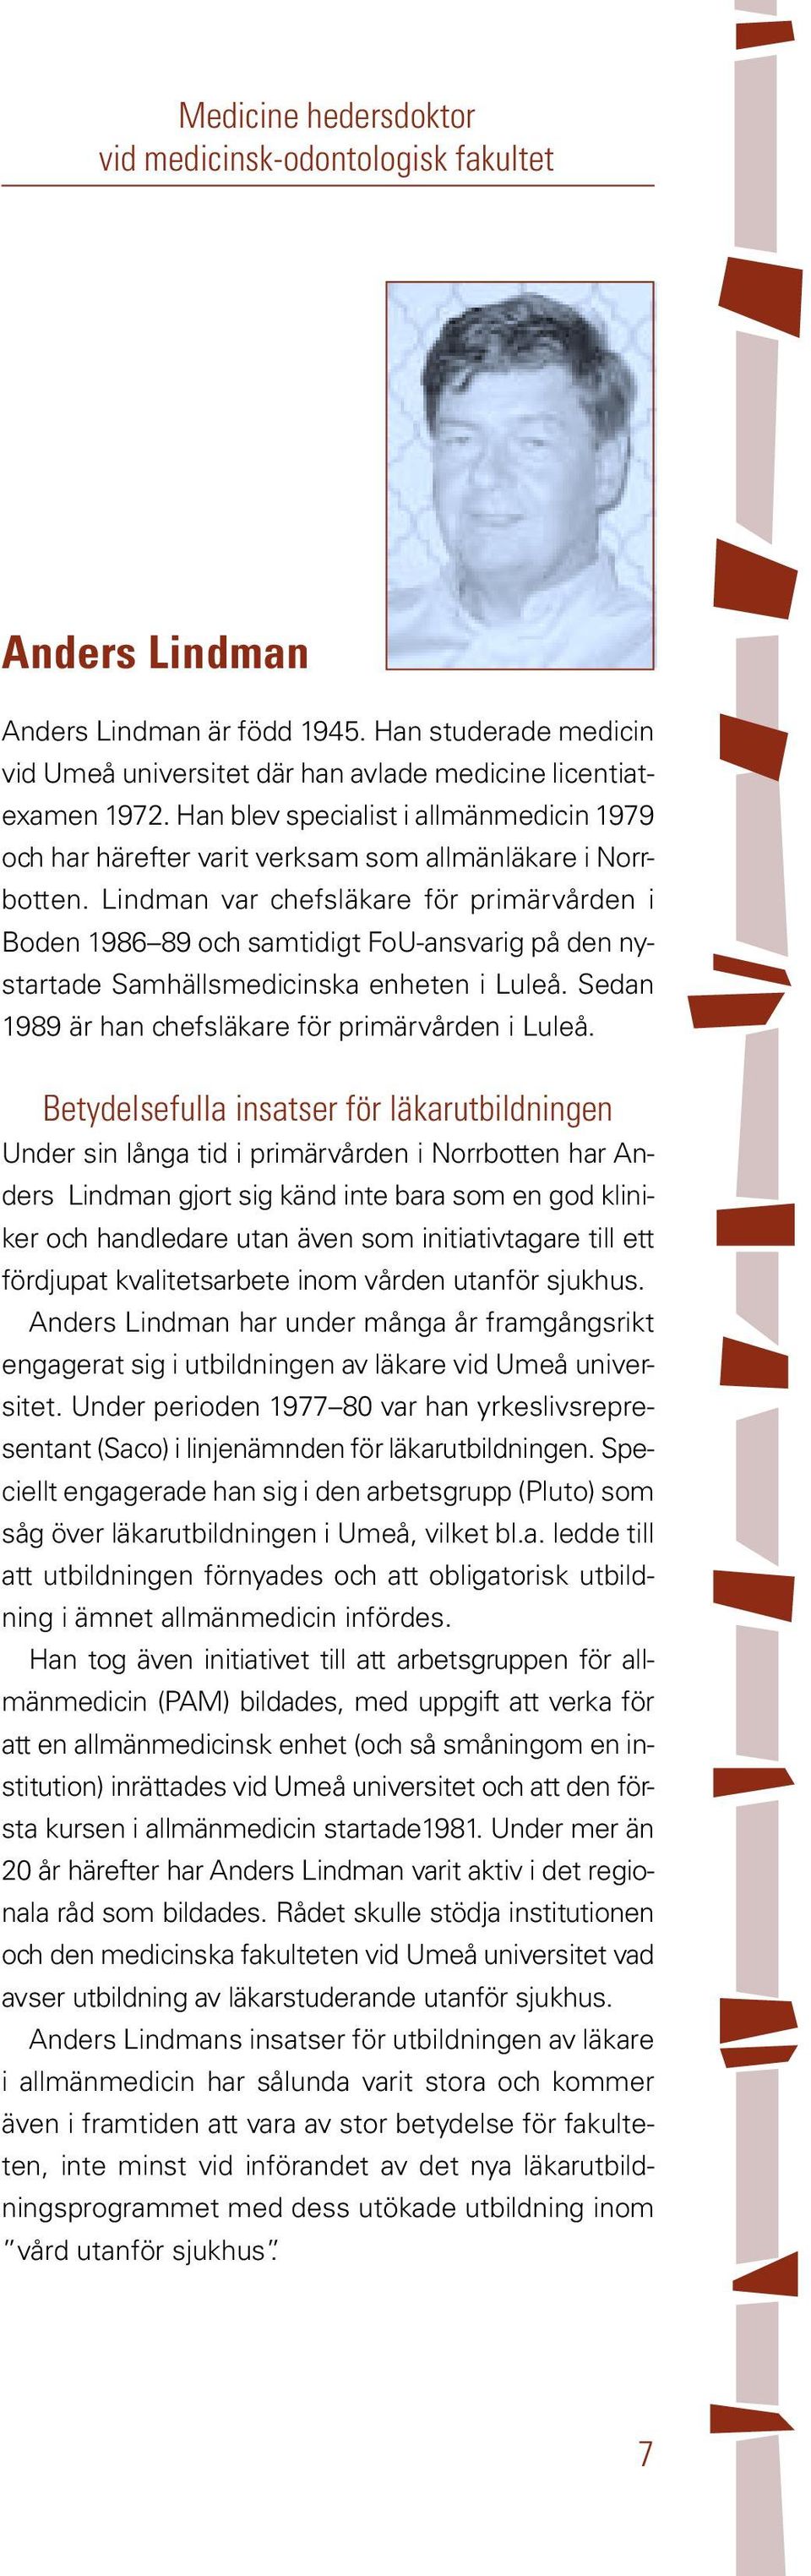 Lindman var chefsläkare för primärvården i Boden 1986 89 och samtidigt FoU-ansvarig på den nystartade Samhällsmedicinska enheten i Luleå. Sedan 1989 är han chefsläkare för primärvården i Luleå.